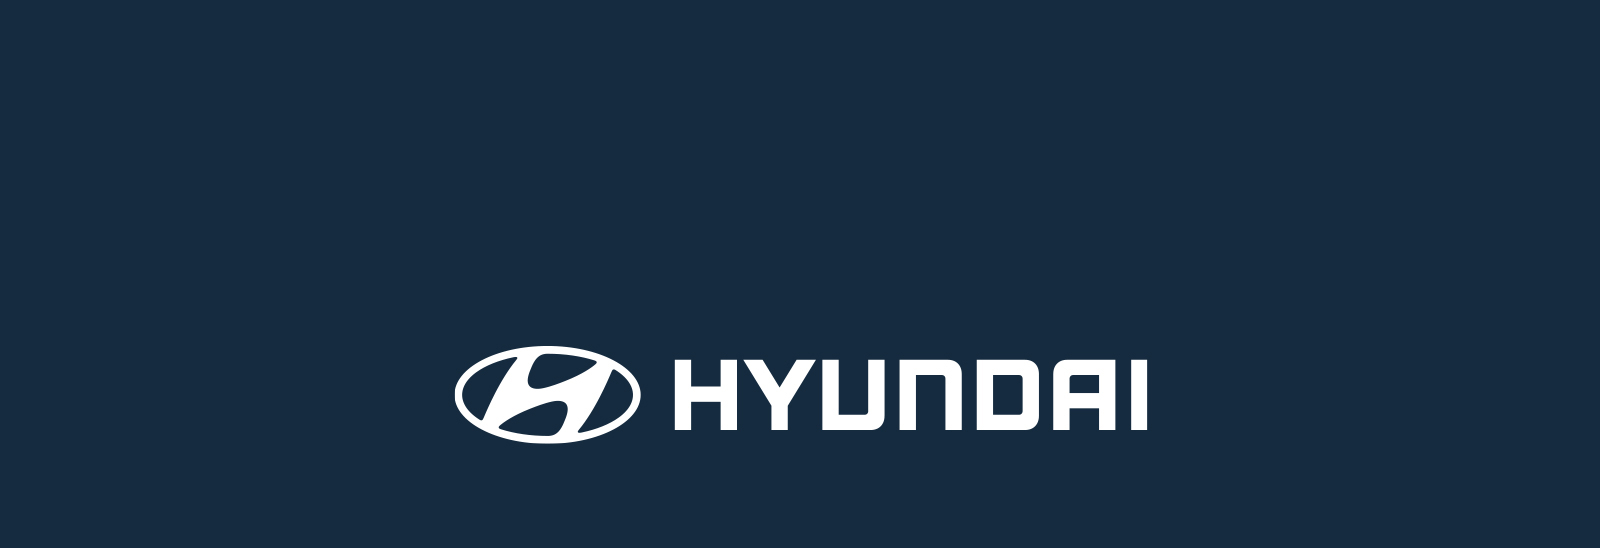 Logo Hyundai blanco sobre fondo azul